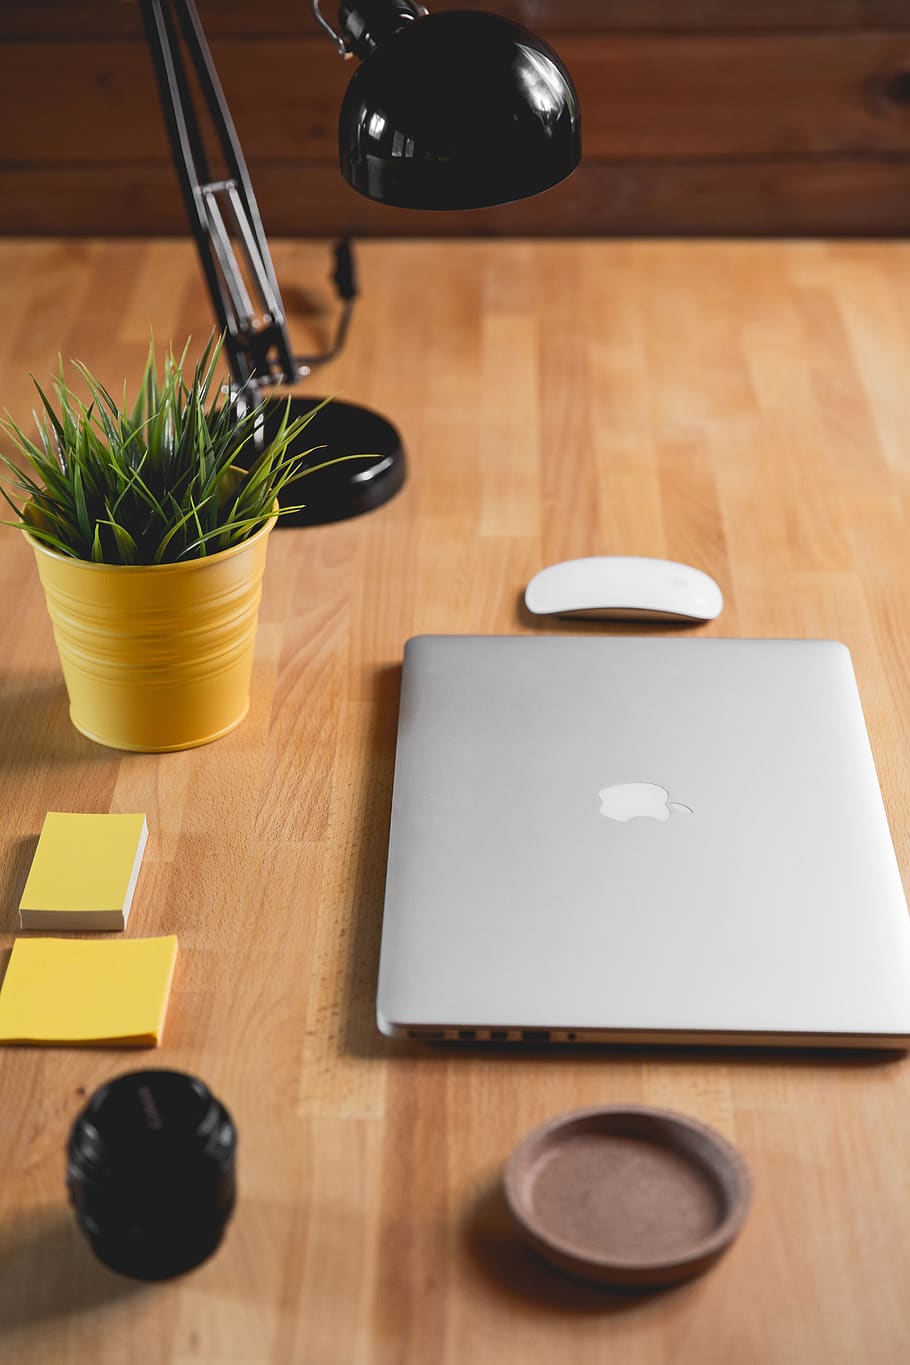 macbook, mouse, lámpara, negro, publíquelo, amarillo, escritorio, oficina, negocios, planta